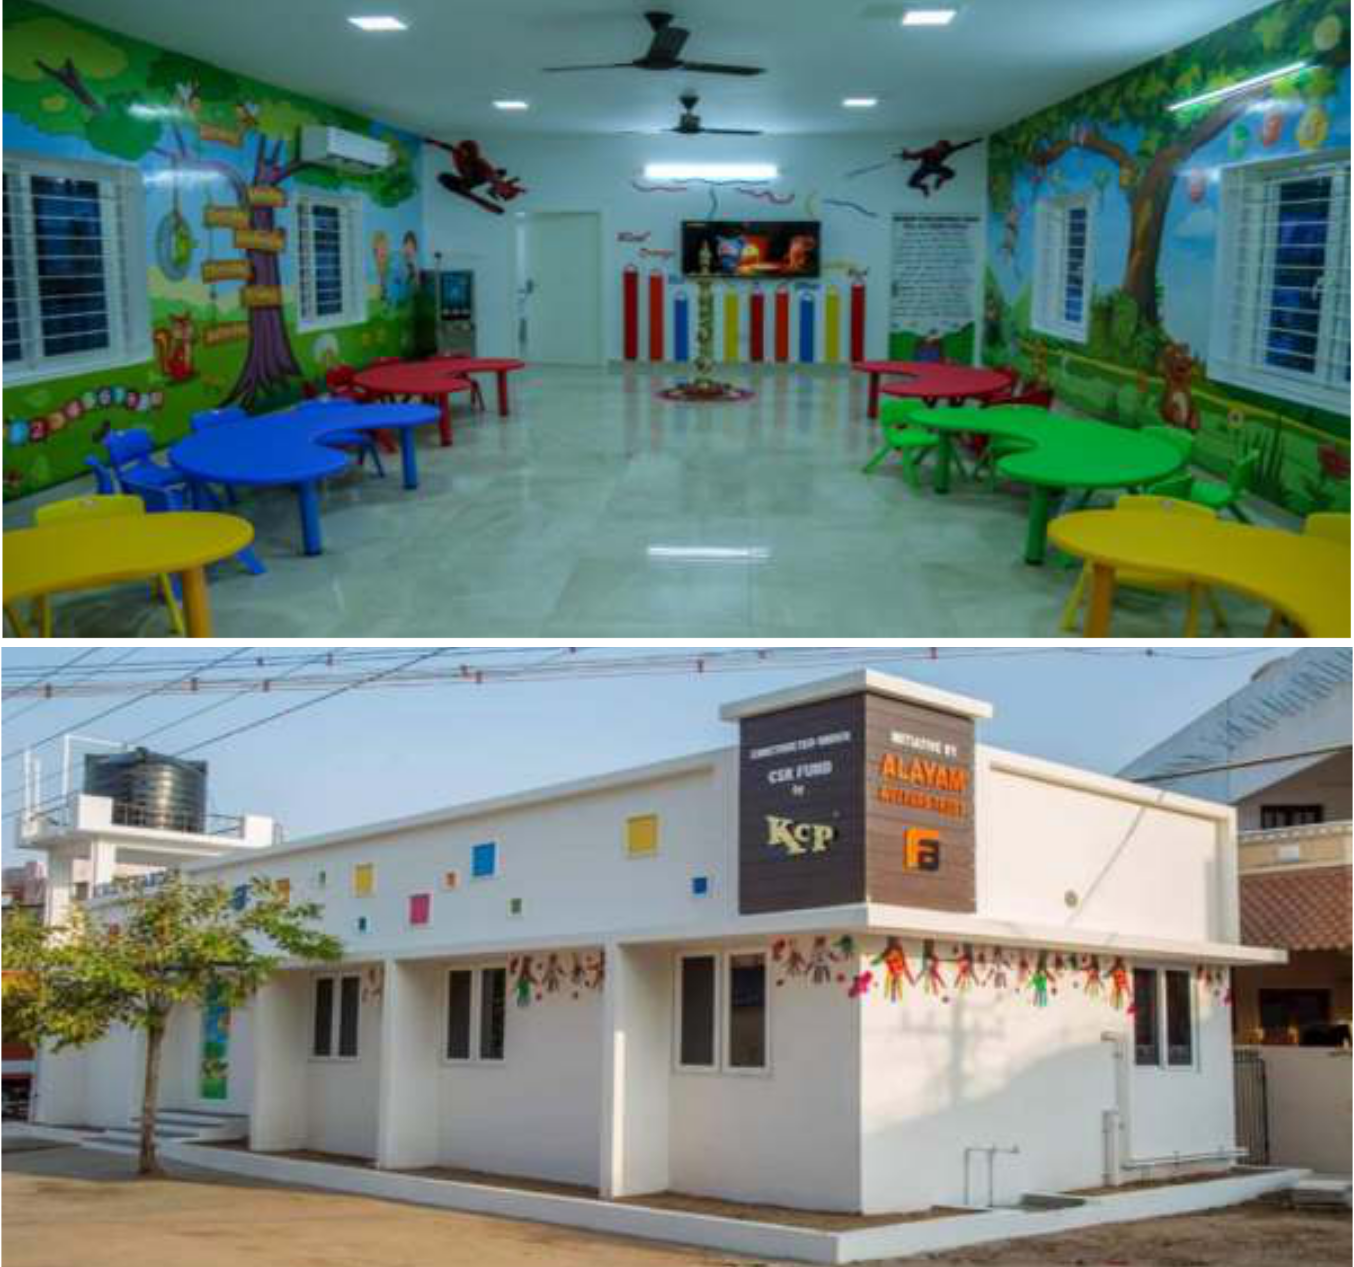 B - Building of Kindergarten School